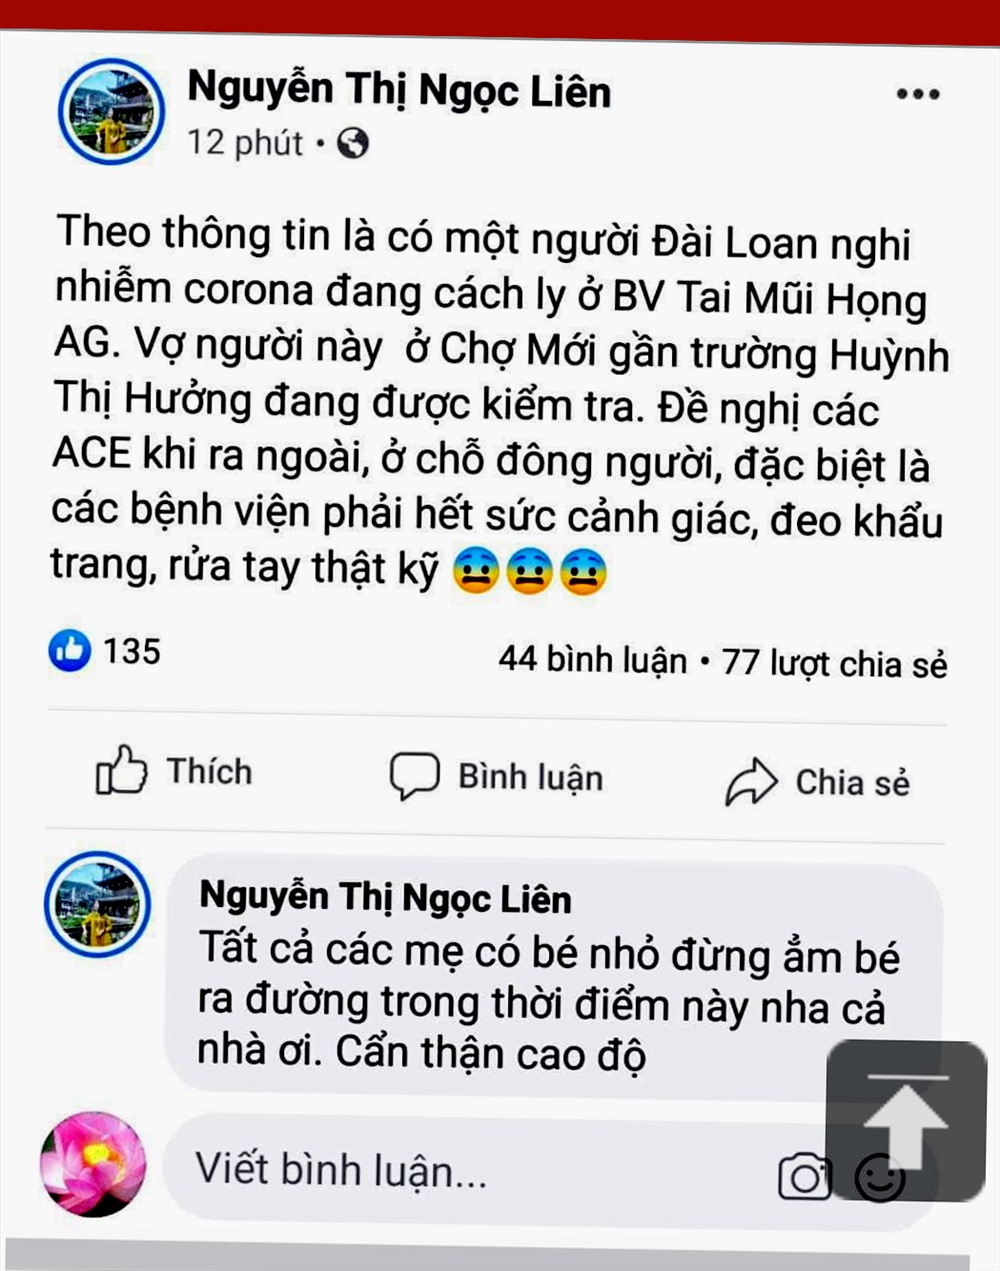 Thông tin từ tài khoản facebook Nguyễn Thị Ngọc Liên. Ảnh: LT